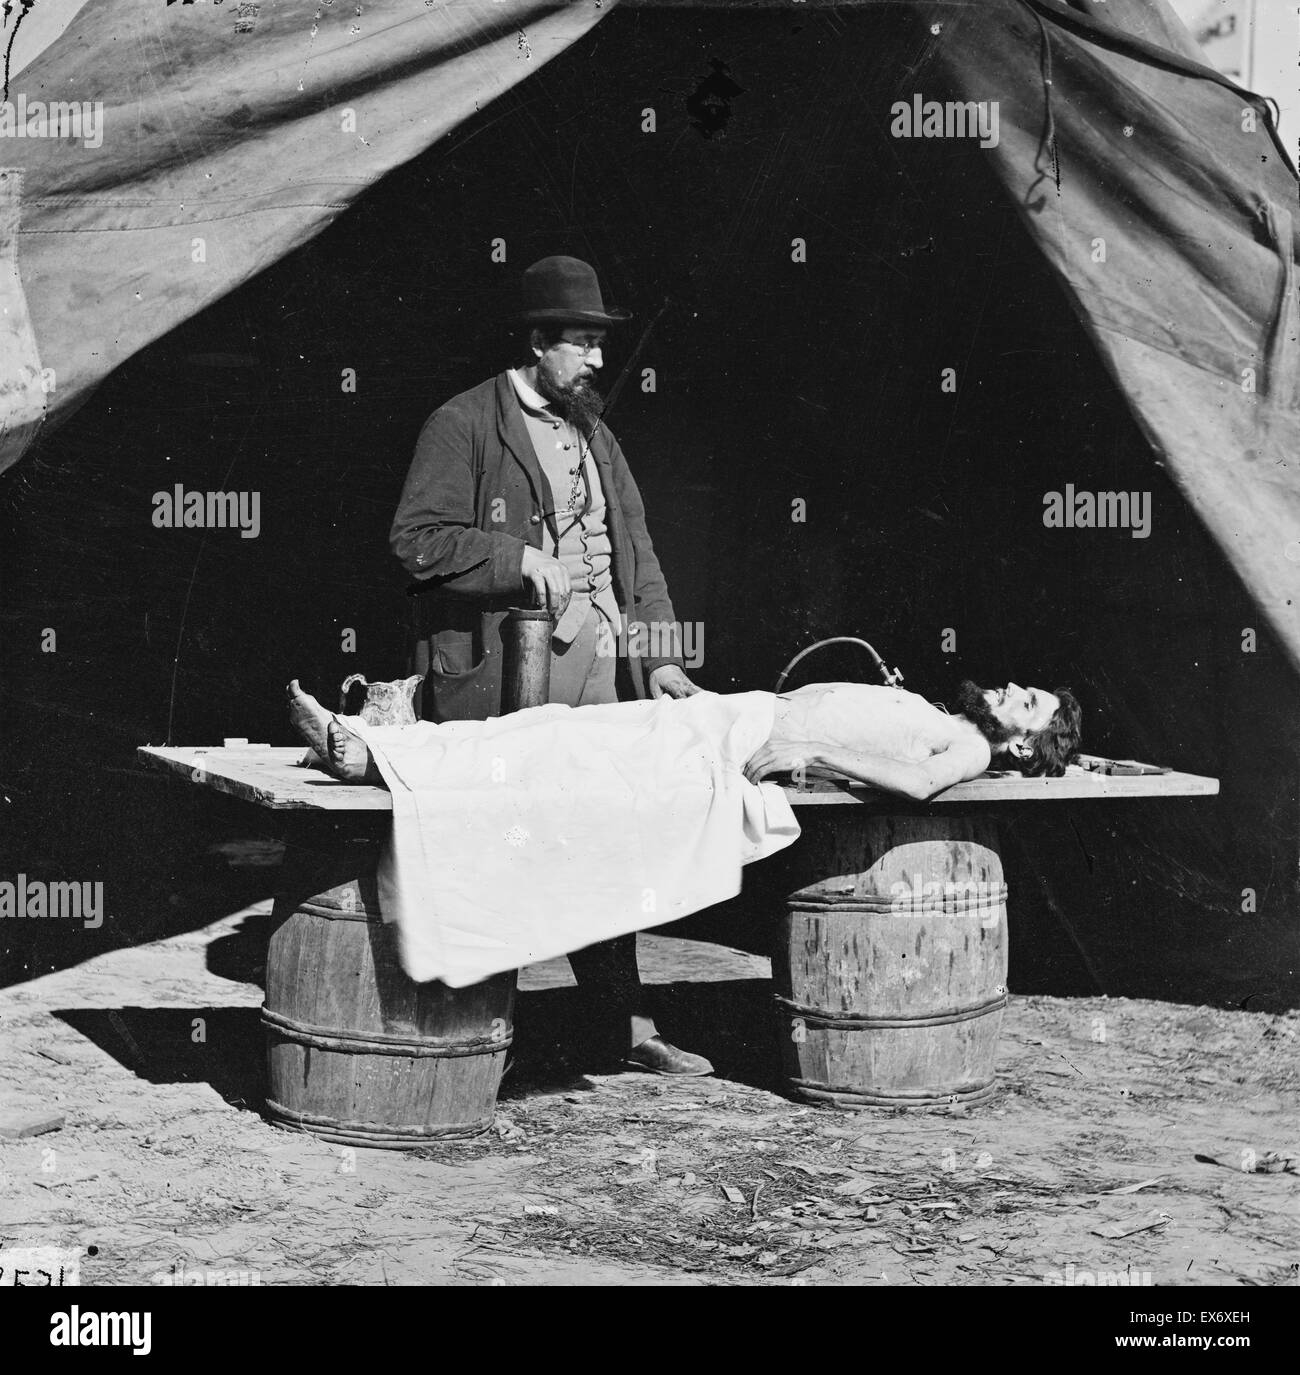 Unbekannten Ort. Einbalsamierung Chirurg bei der Arbeit am Körper des Soldaten. Veröffentlicht von (1860 bis 1865). Fotos von Artillerie, Ort und Datum unbekannt. Stockfoto